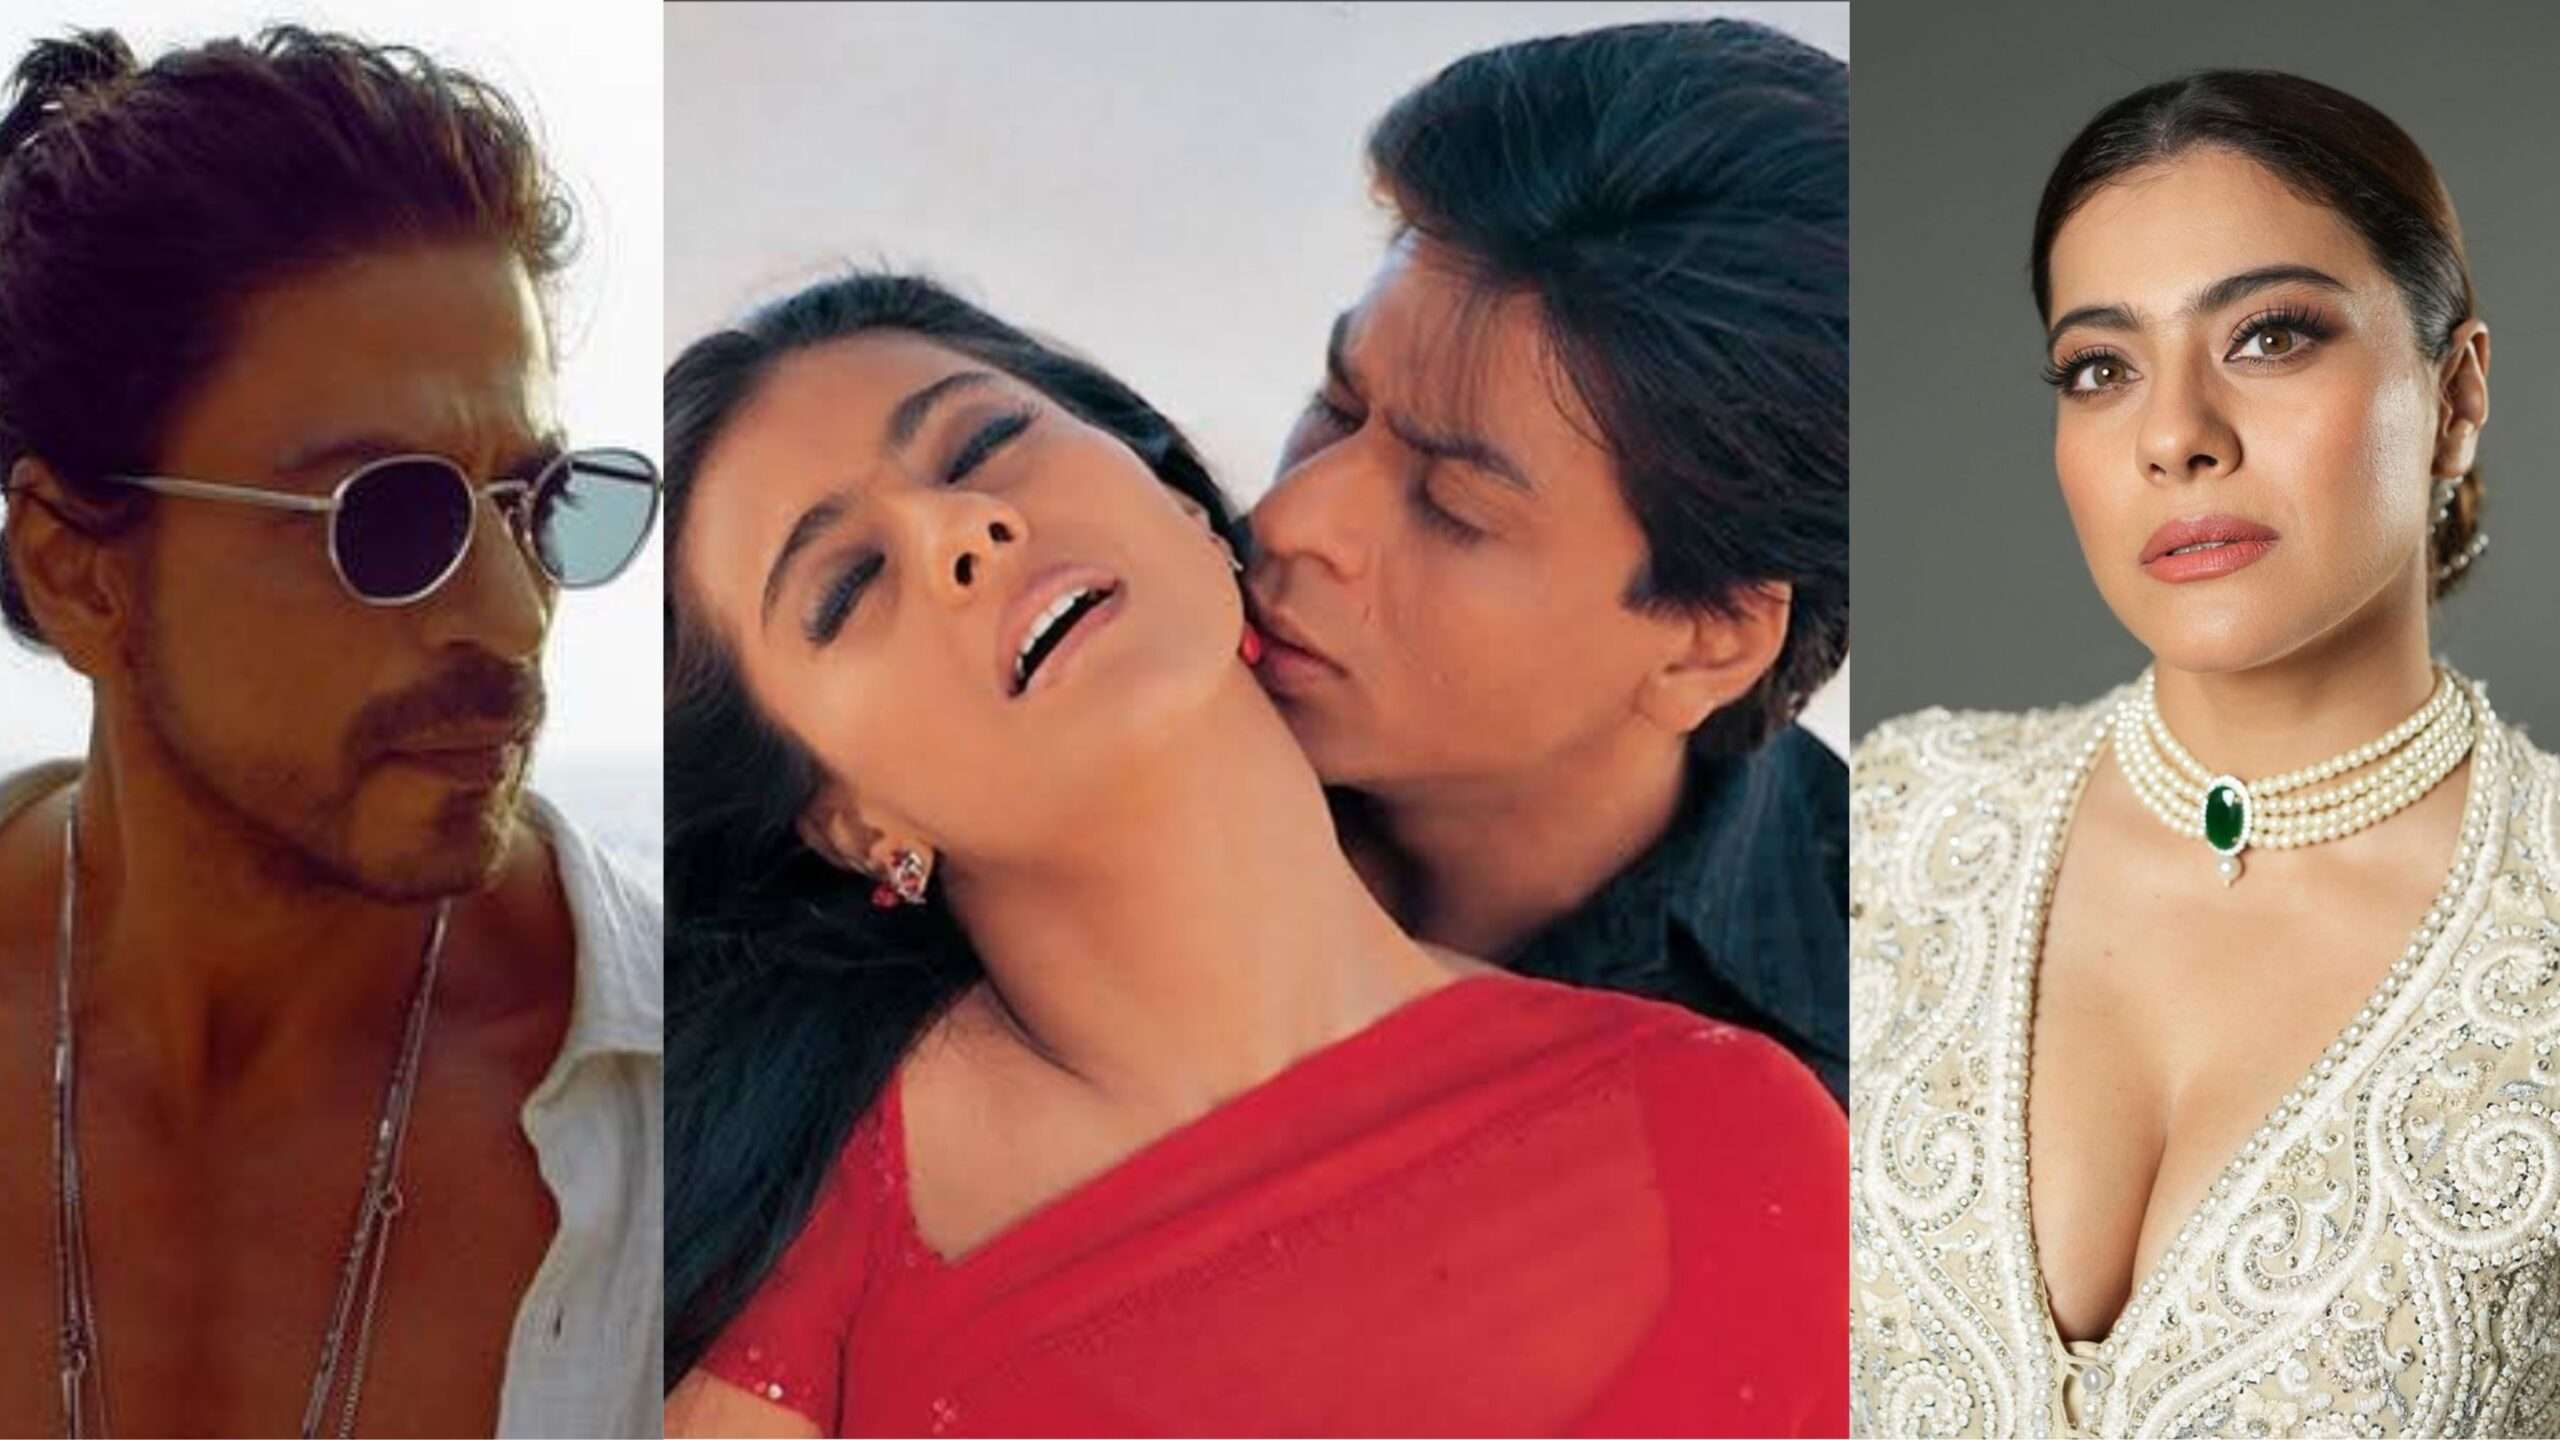 Shah-Rukh-Khan-and-Kajol-romance